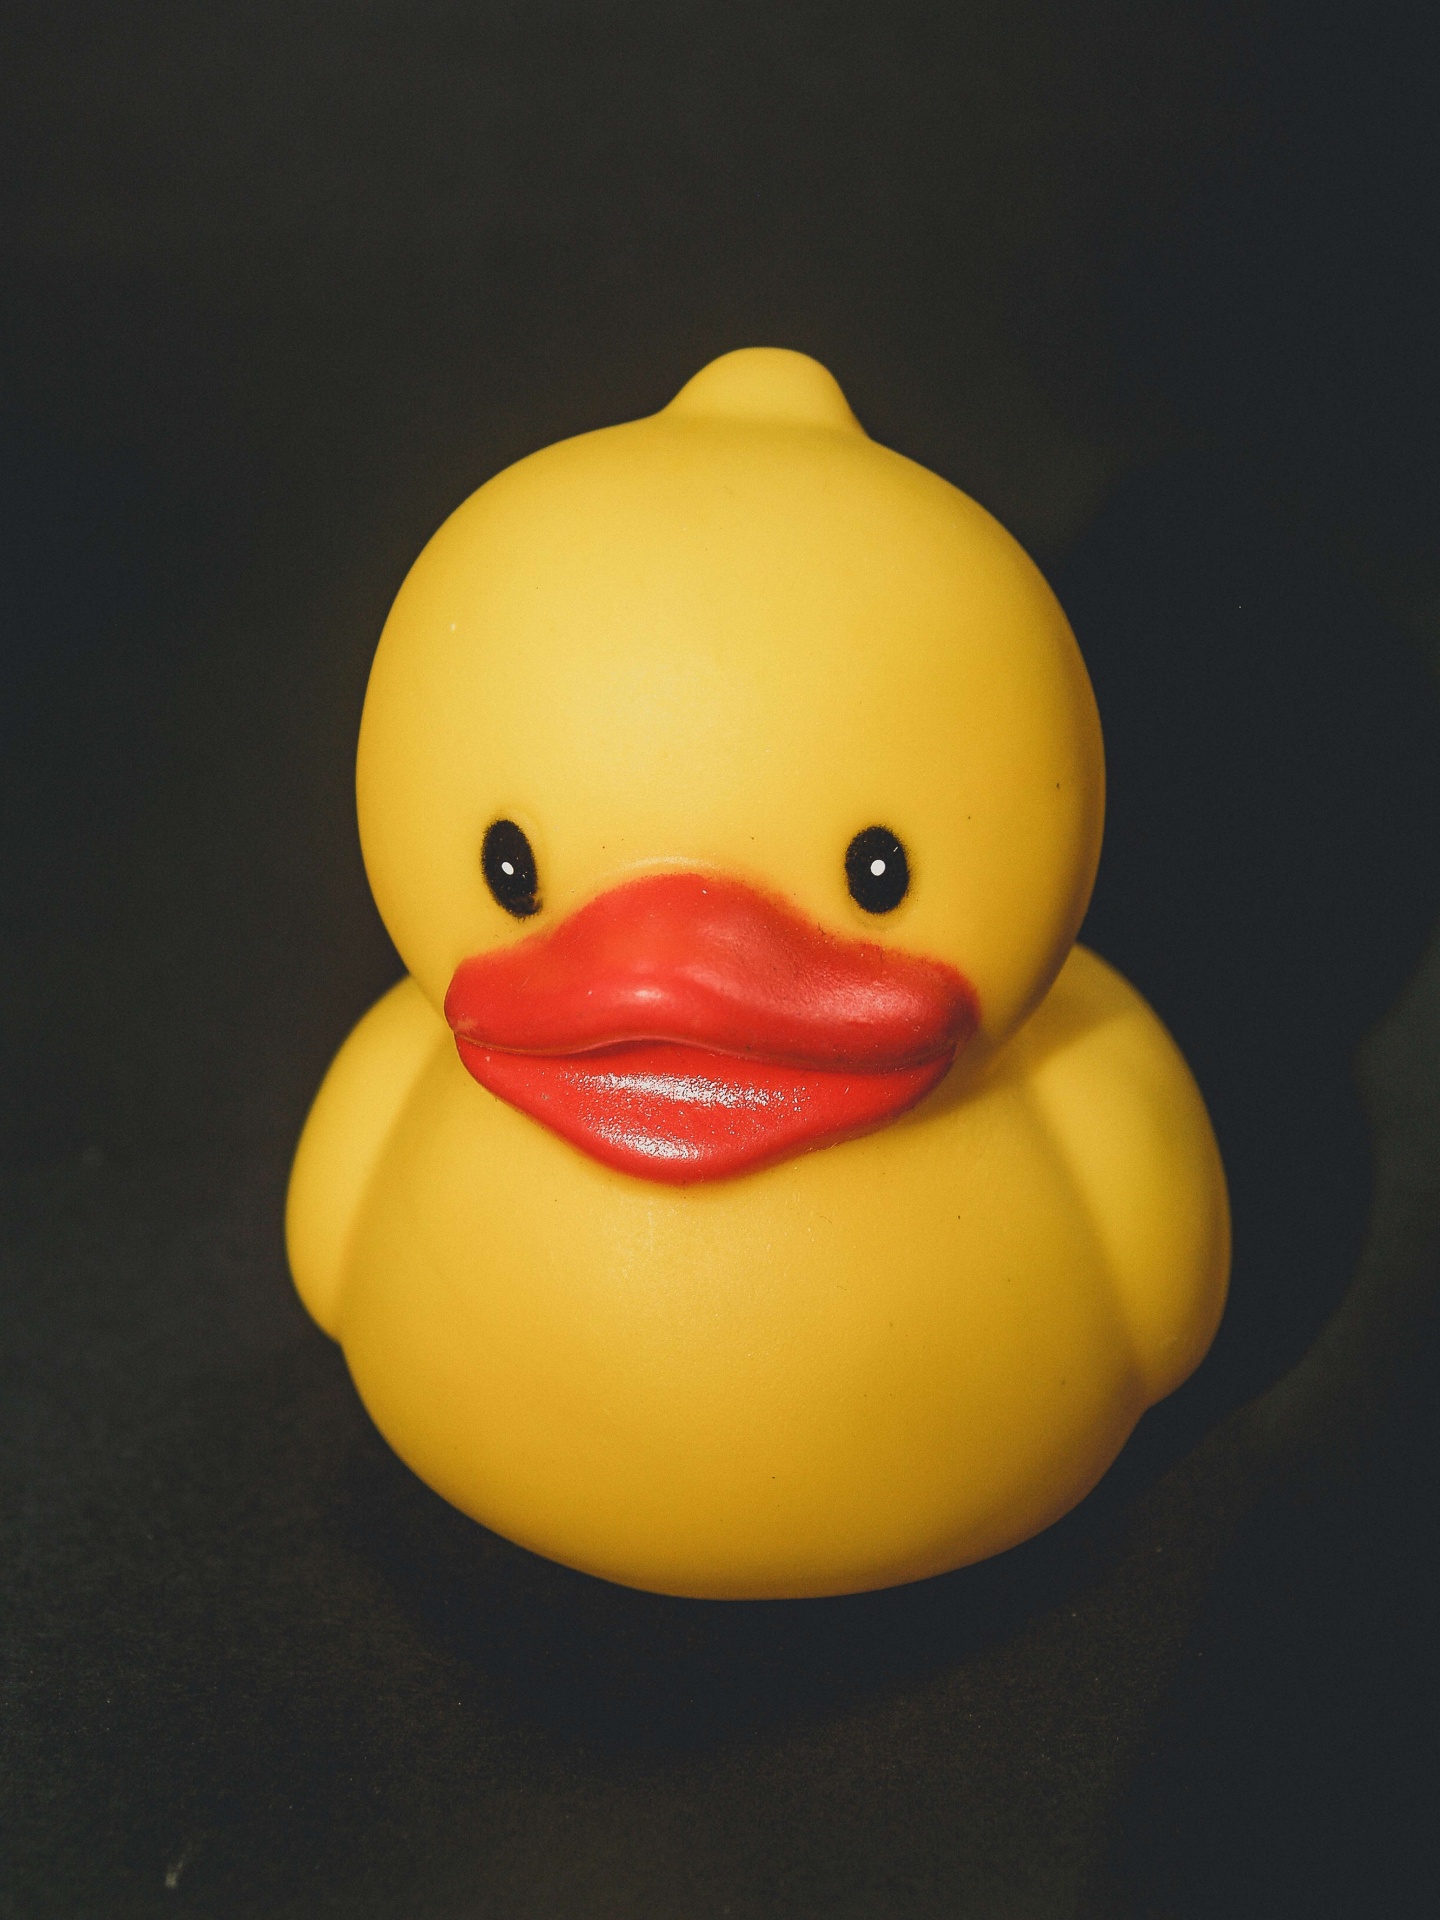 Bath Duck Toy